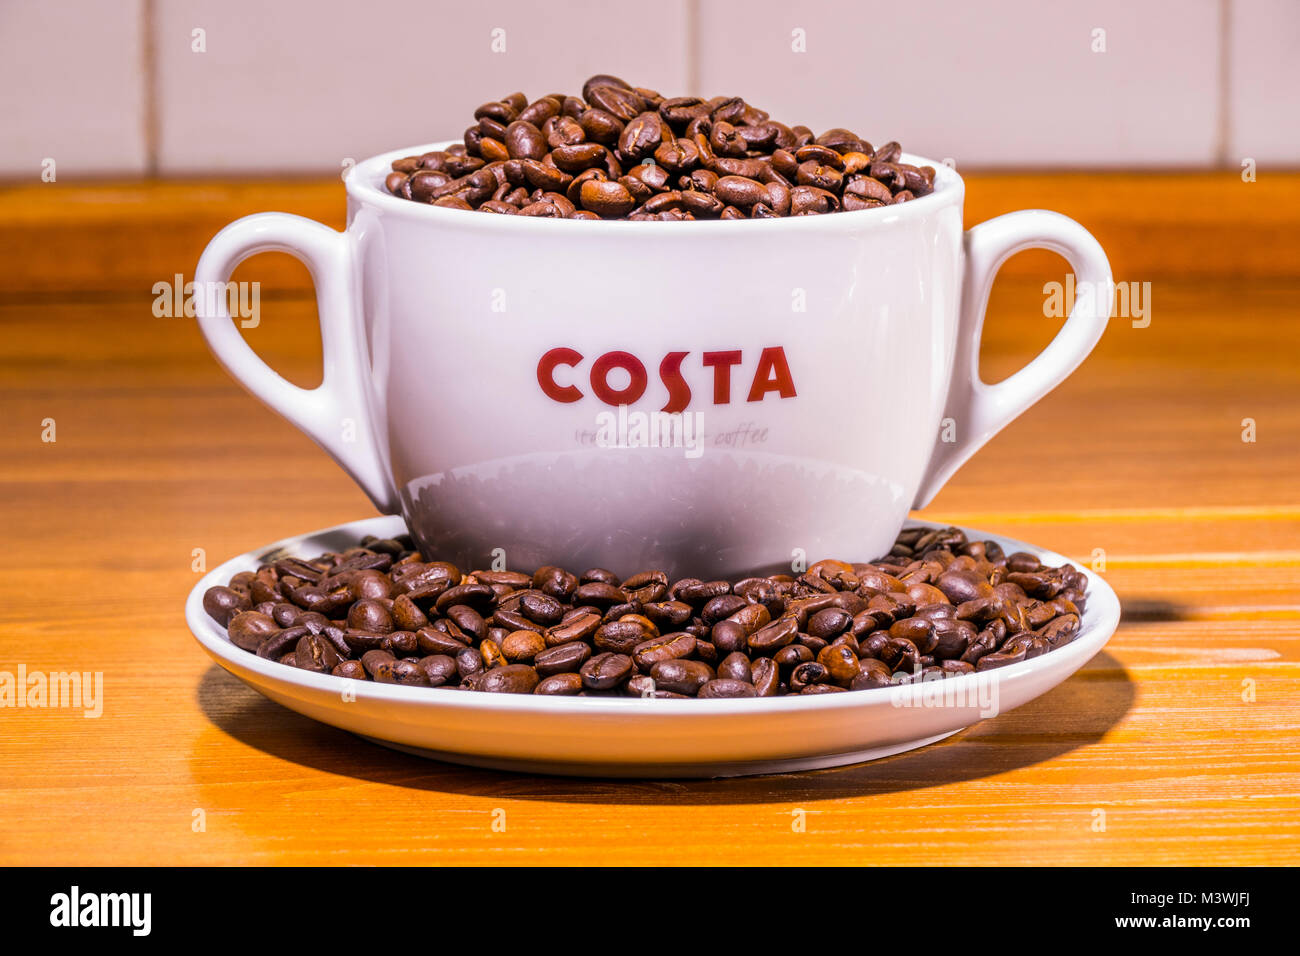 Costa Kaffee: Logo auf extra große Tasse (mit zwei Griffe), sitzen auf der Untertasse, voll von gerösteten Kaffeebohnen, auf einer alten Kiefer Arbeitsplatte. England, UK. Stockfoto